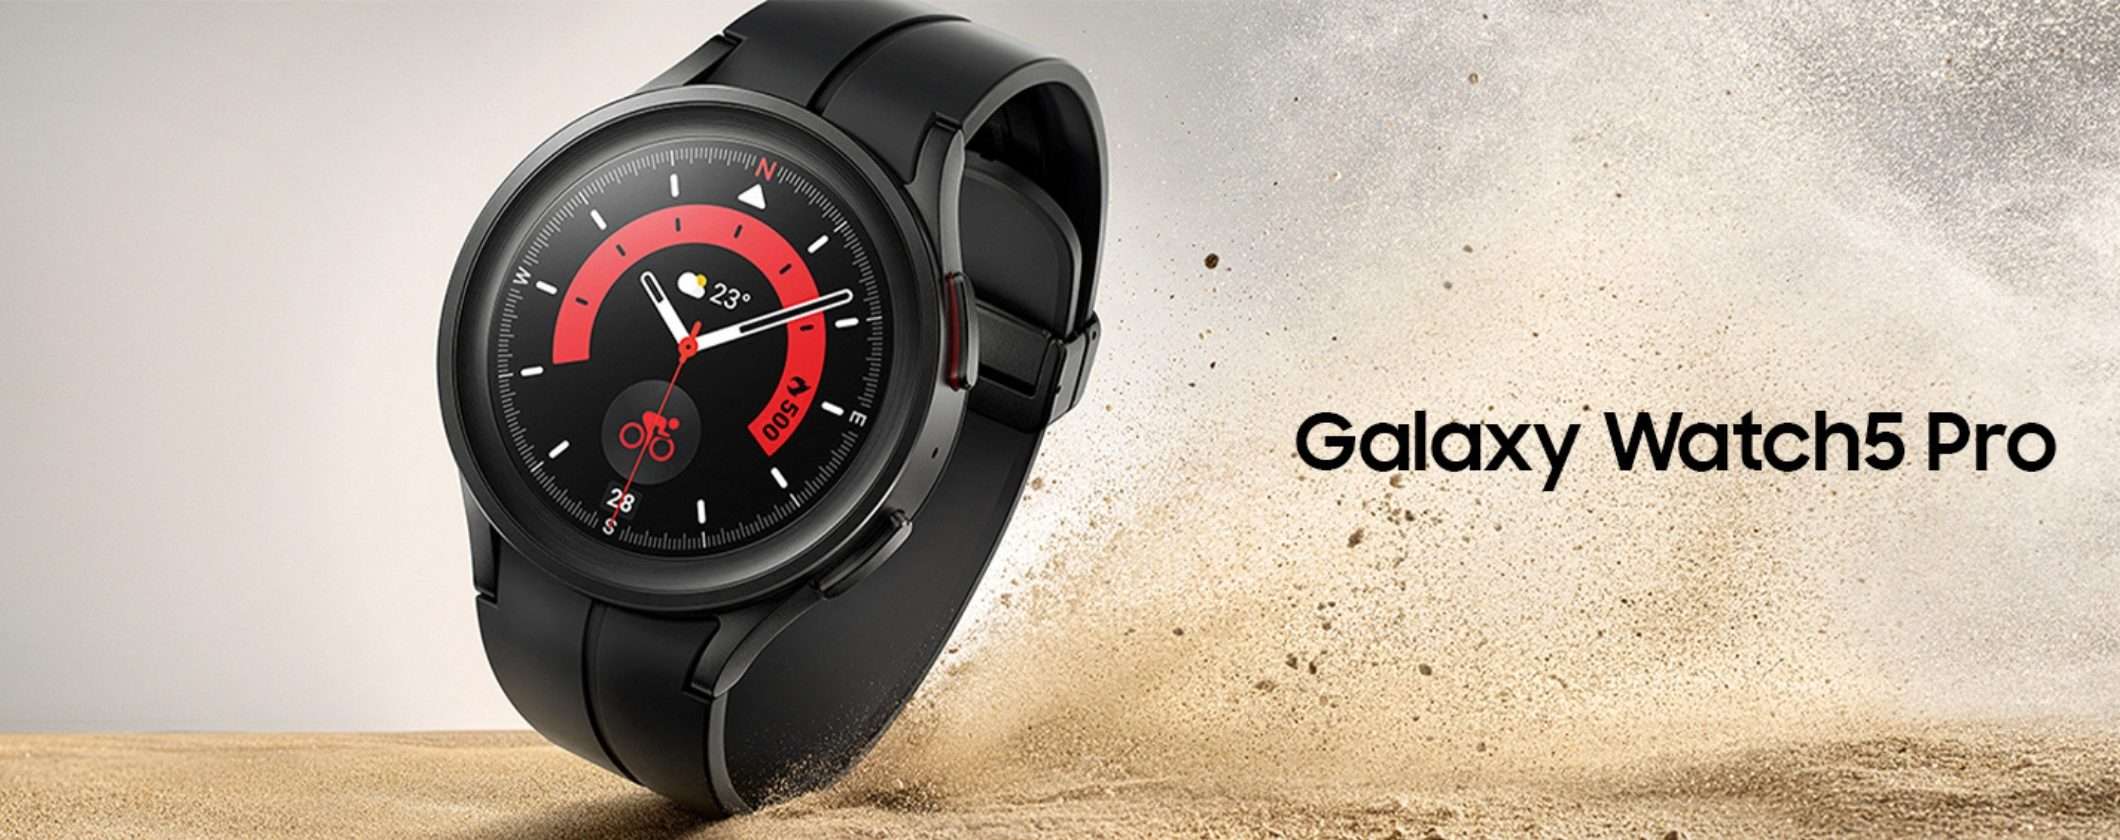 Samsung Galaxy Watch5 Pro: prezzo TOP e Tasso Zero alle Offerte Prime